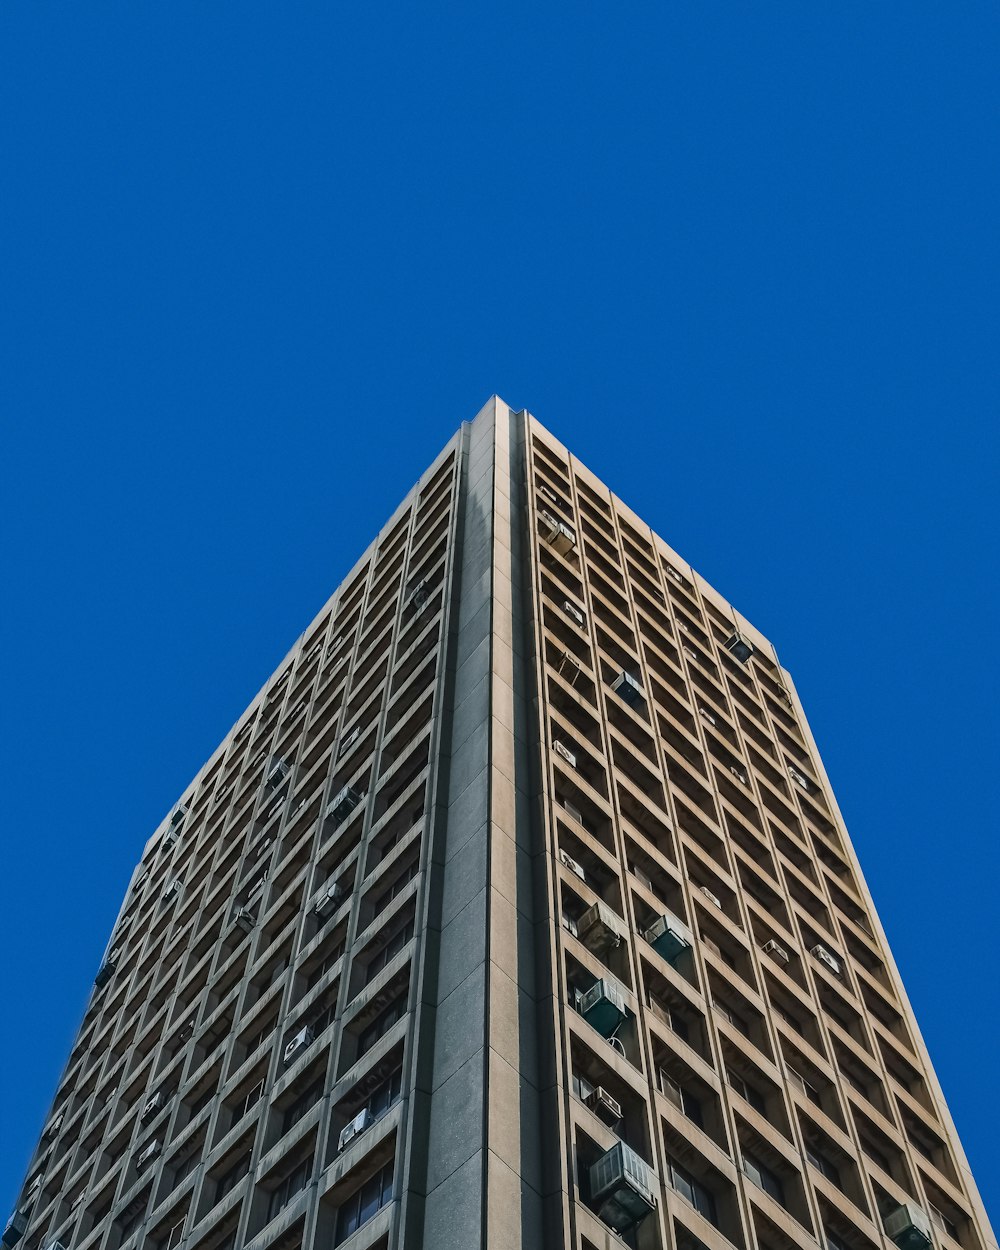 fotografia de baixo ângulo do edifício de concreto cinza sob o céu azul durante o dia